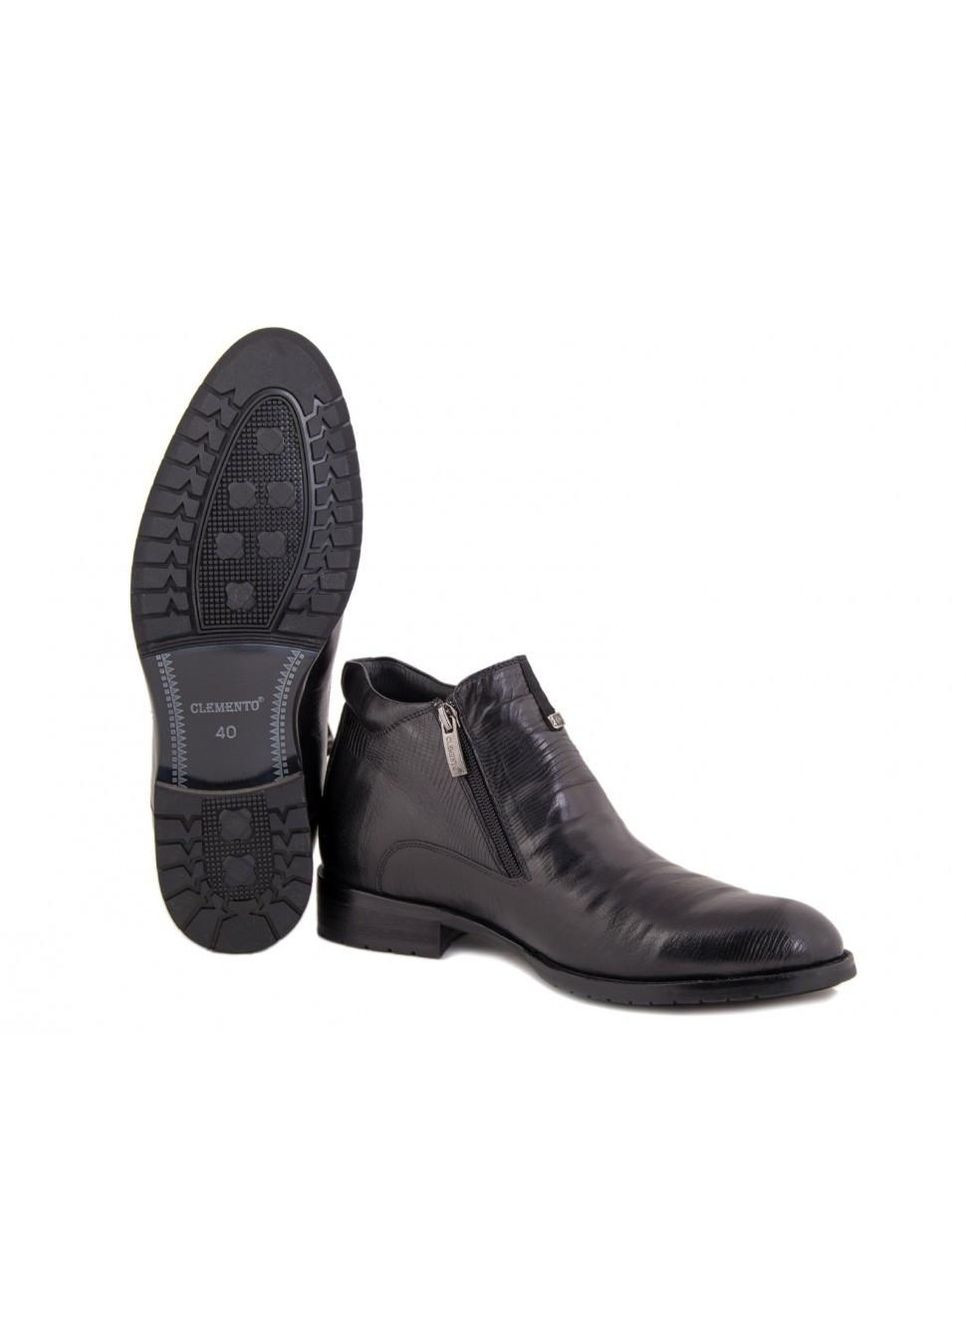 Черные зимние ботинки 7154626 38 цвет черный Clemento